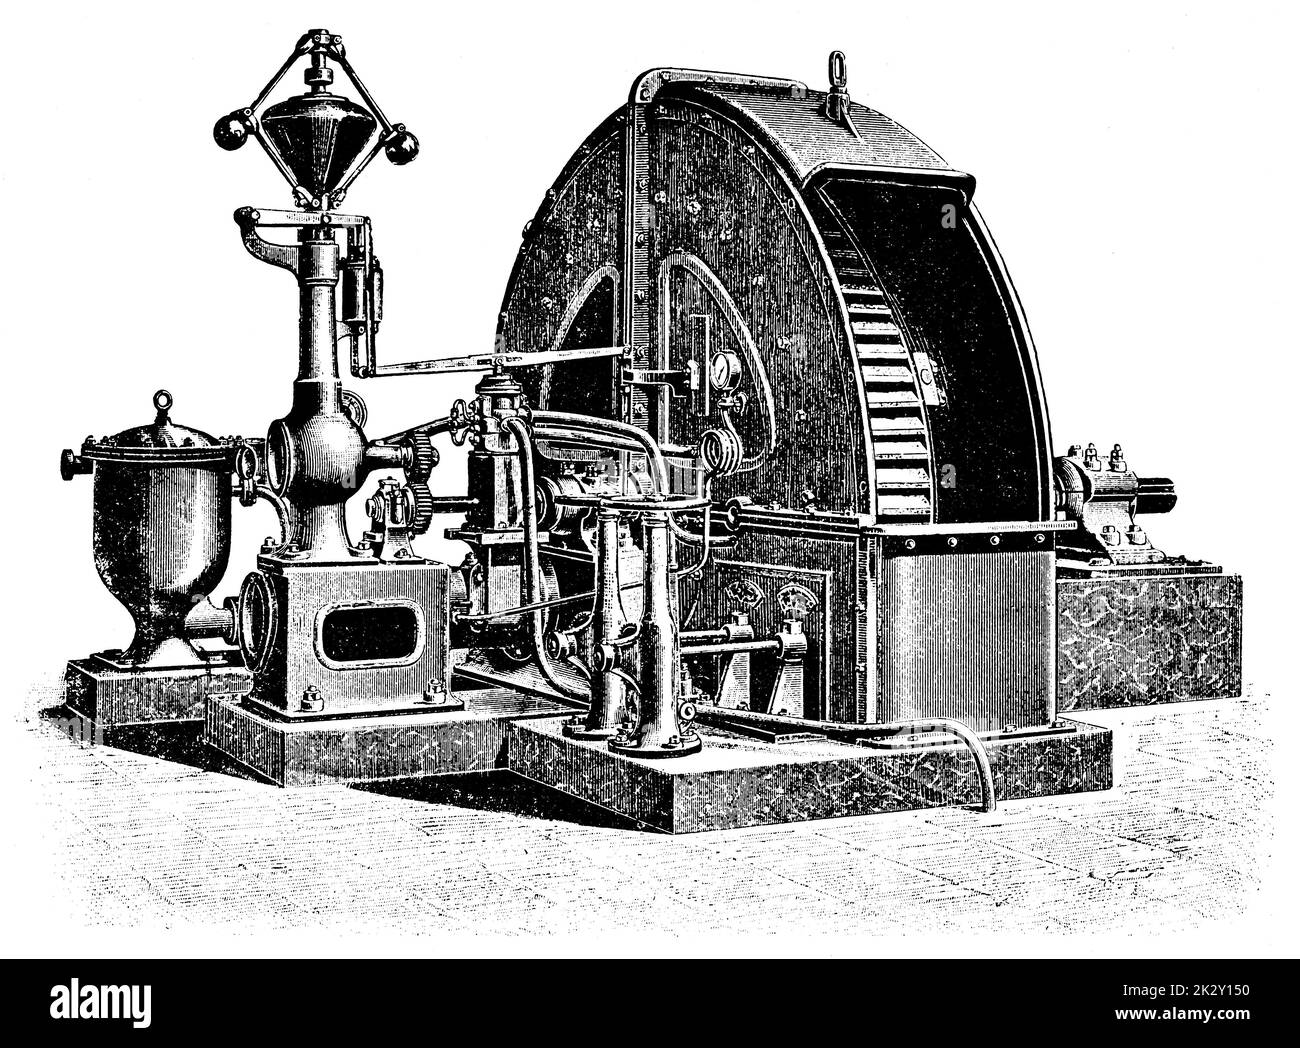 Wasserturbine von einem französischen Hydrauliktechniker Louis Dominique Girard. Illustration des 19. Jahrhunderts. Deutschland. Weißer Hintergrund. Stockfoto